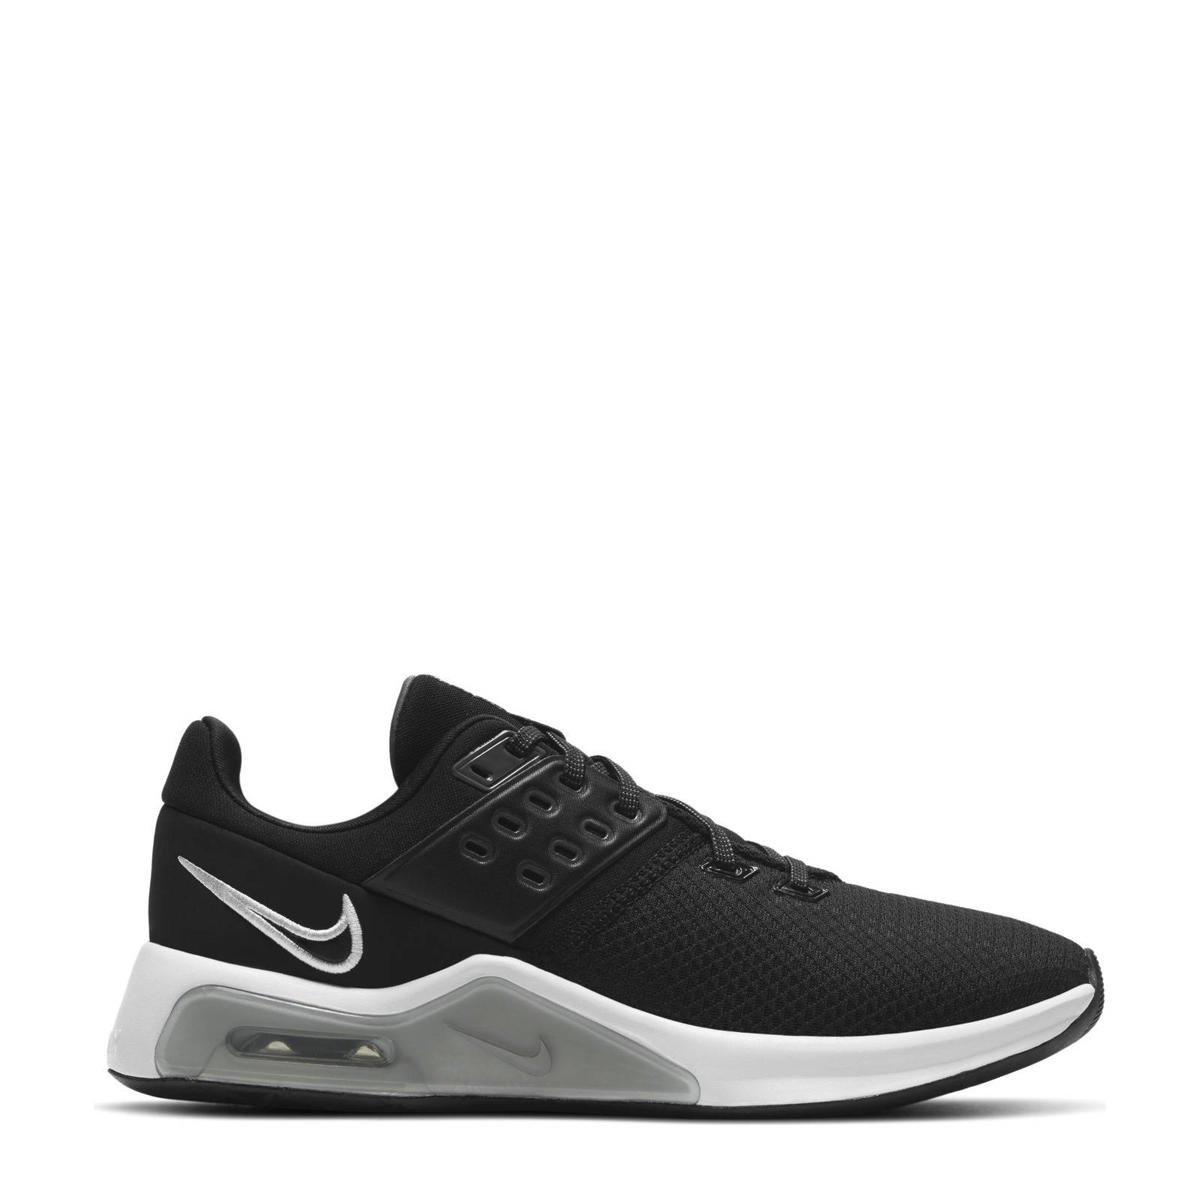 Vertolking Leesbaarheid Direct Nike Air Max Bella 4 fitness schoenen zwart/wit/grijs | wehkamp